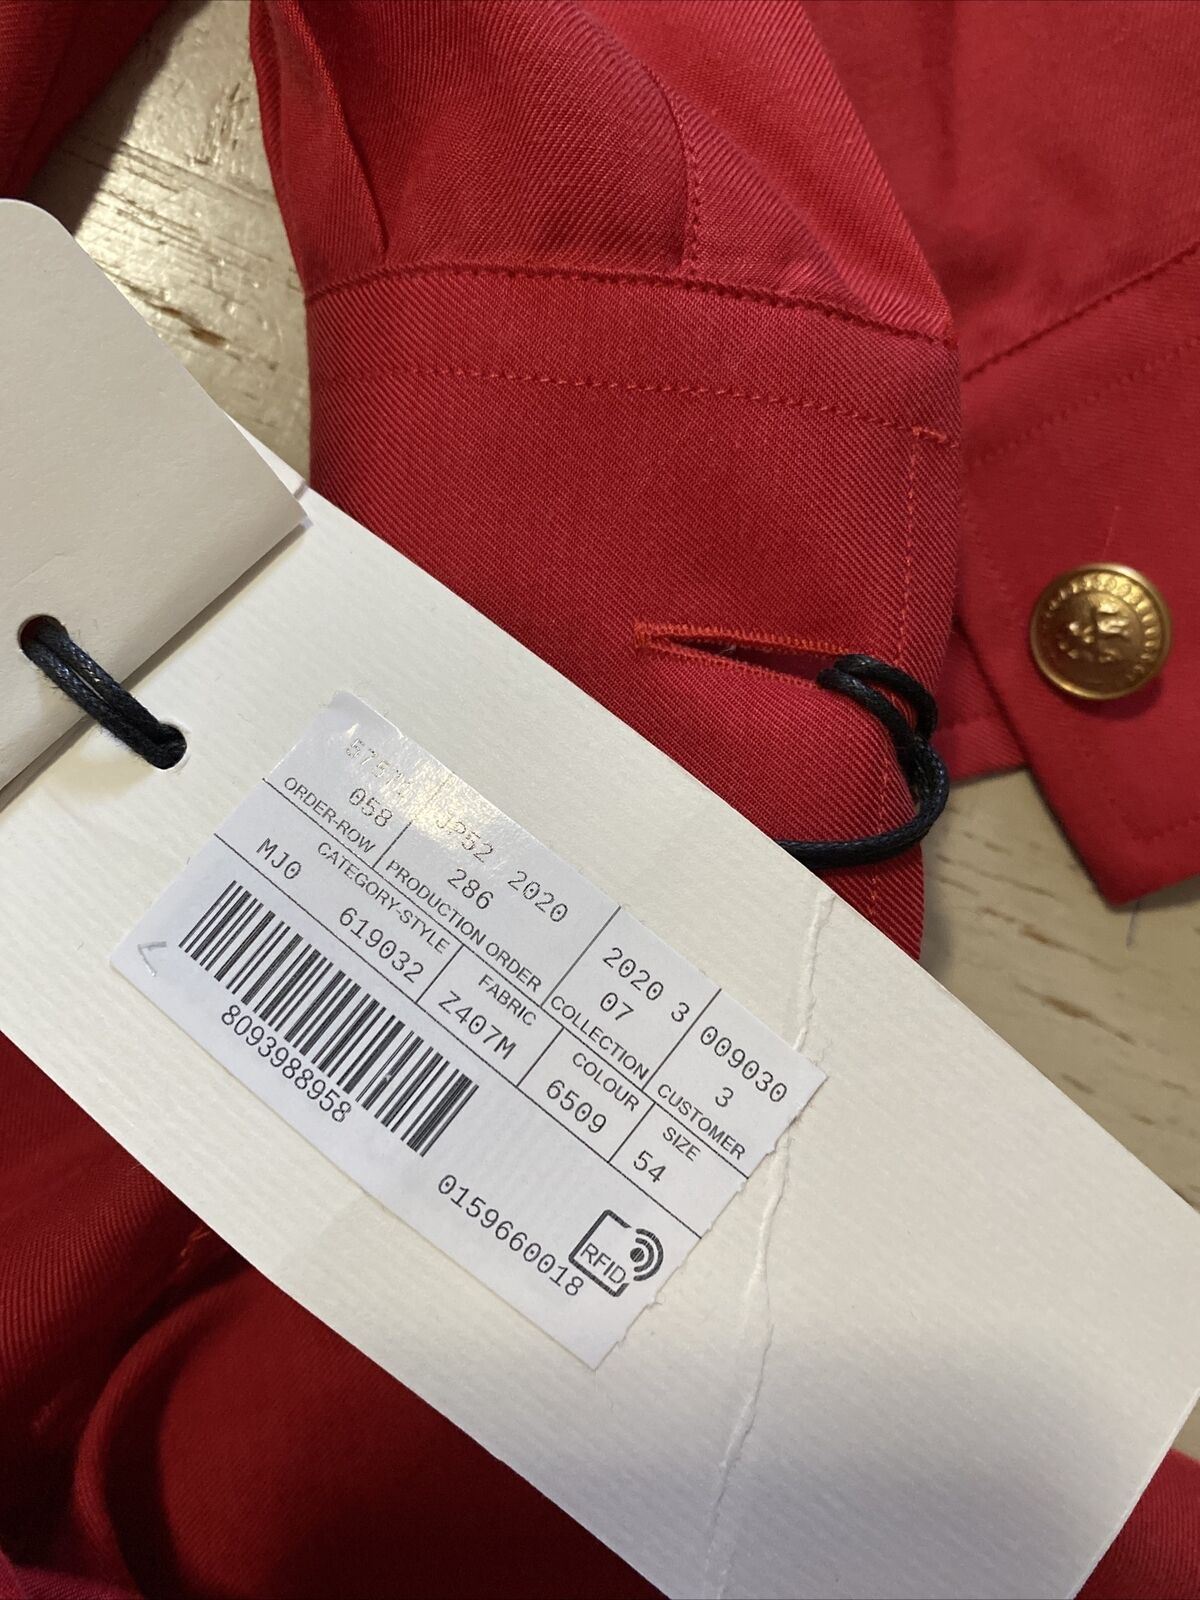 Neues Gucci Herren-Langarmhemd im Wert von 1200 $, DK Burgunderrot, Größe XXL/54, Eu, Italien